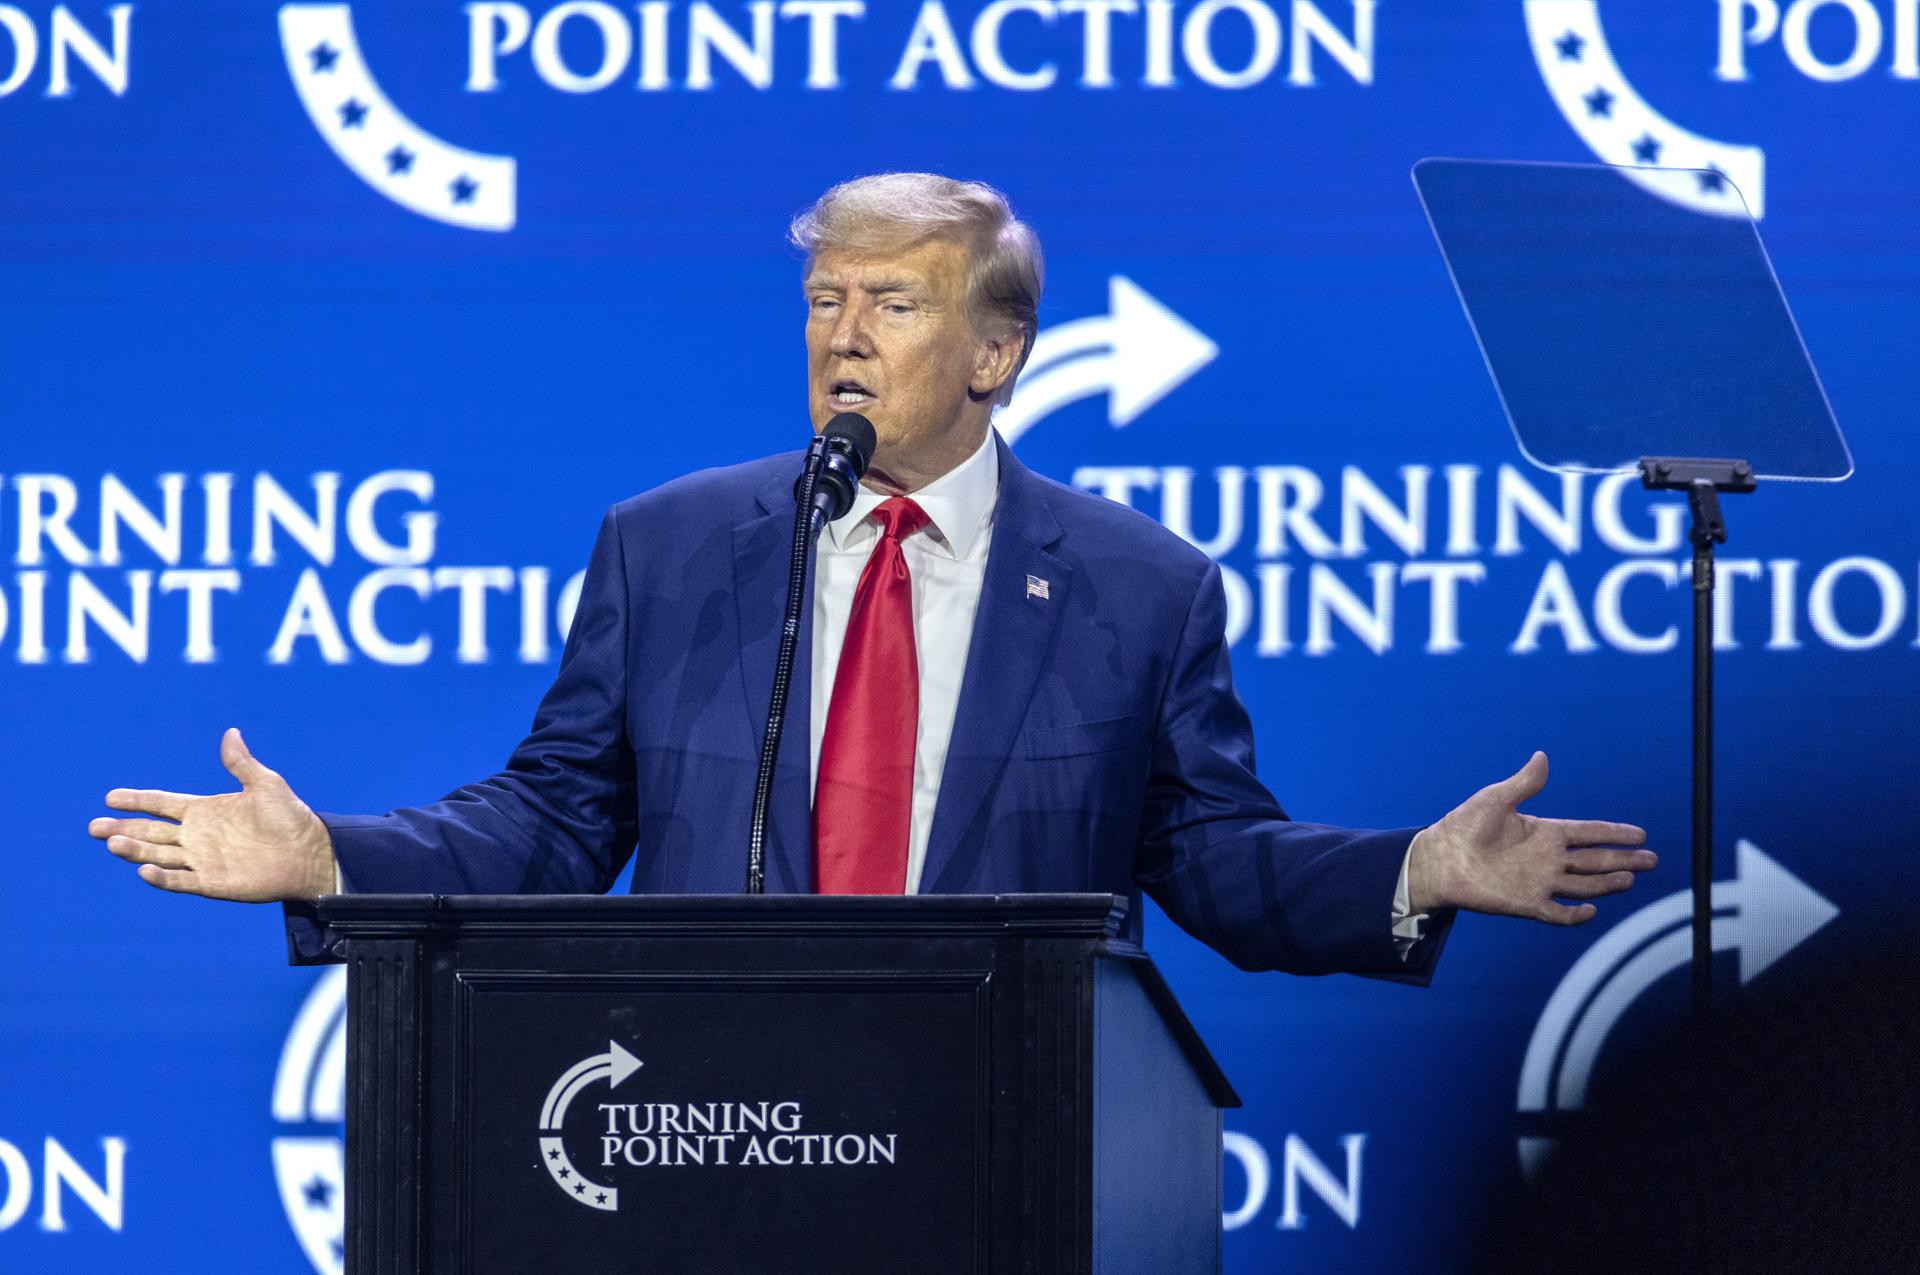 El expresidente de los Estados Unidos, Donald J. Trump, pronuncia un discurso durante la Conferencia de Acción Turning Point en West Palm Beach, Florida. EFE/EPA/CRISTOBAL HERRERA-ULASHKEVICH